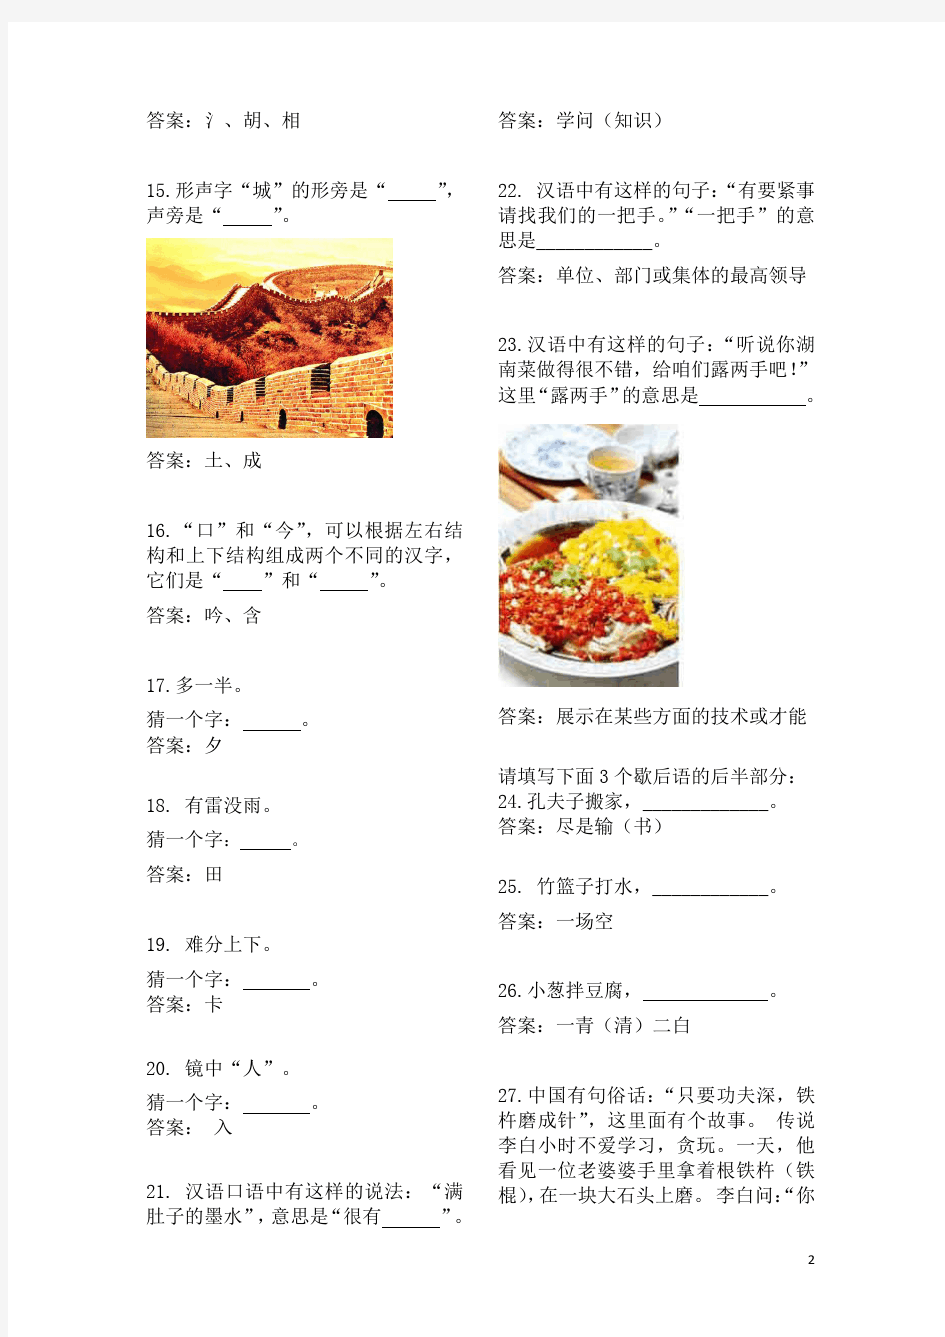 汉语桥世界大学生中文比赛试题汉语知识部分